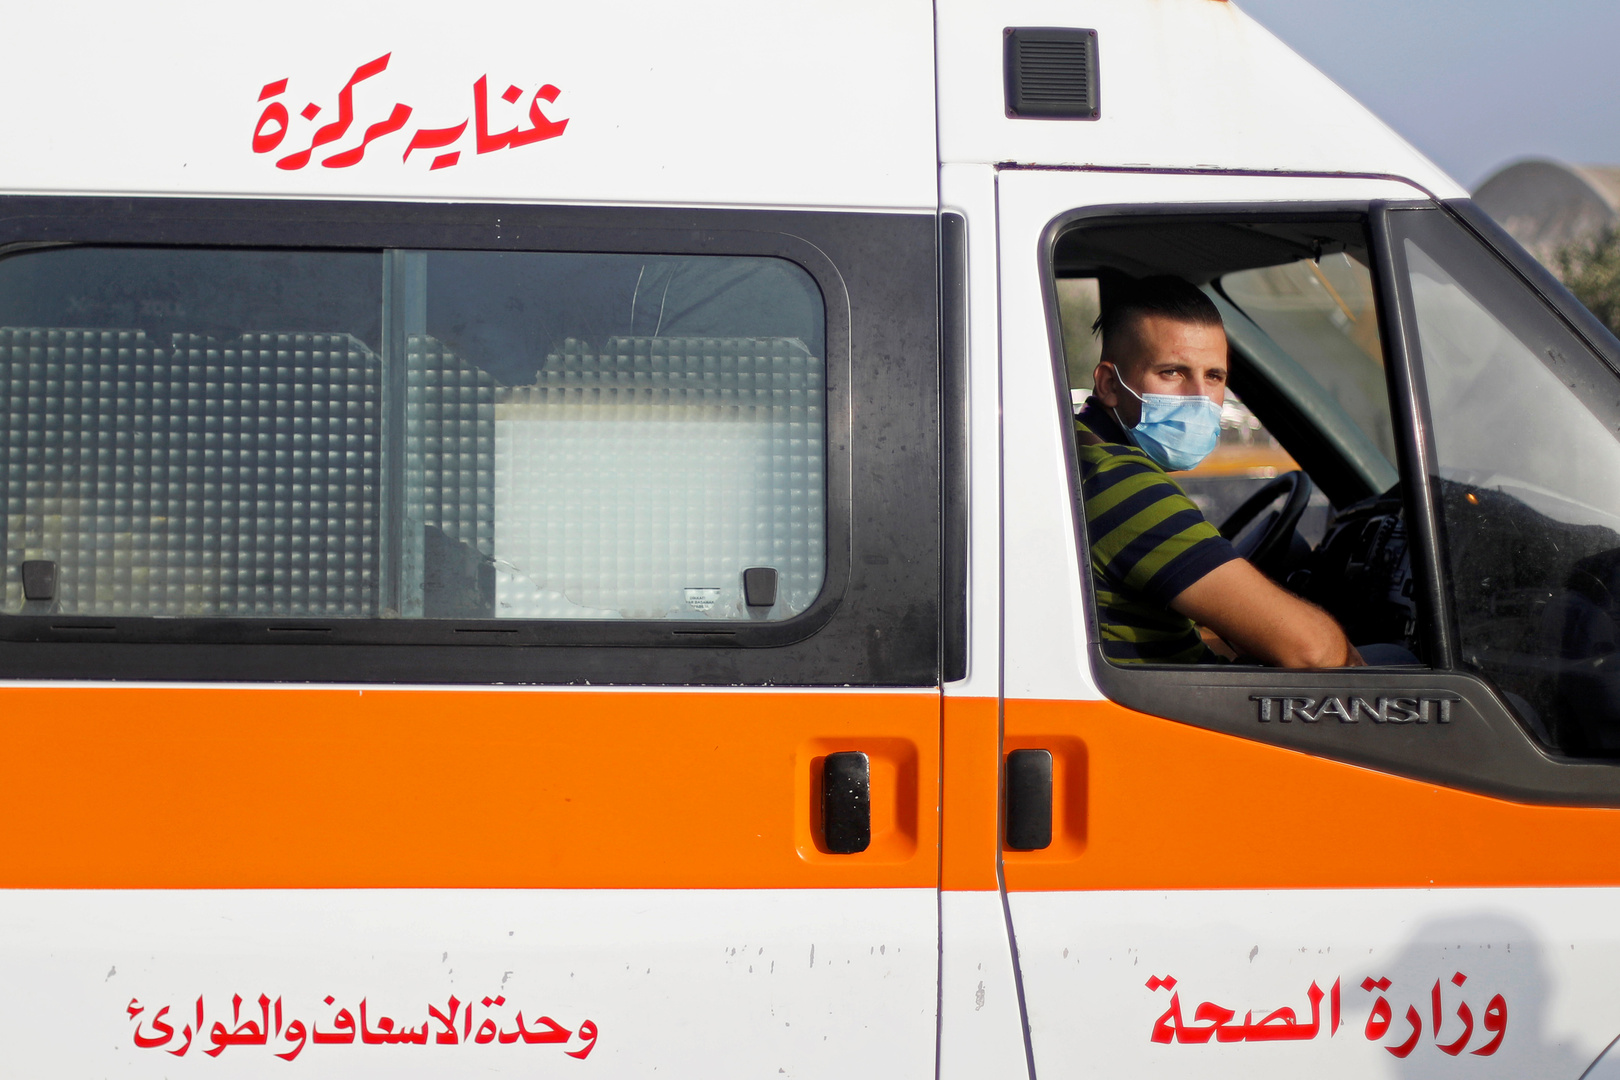 الحكومة المصرية تخطط لتطعيم 2 مليون مواطن بلقاح كورونا